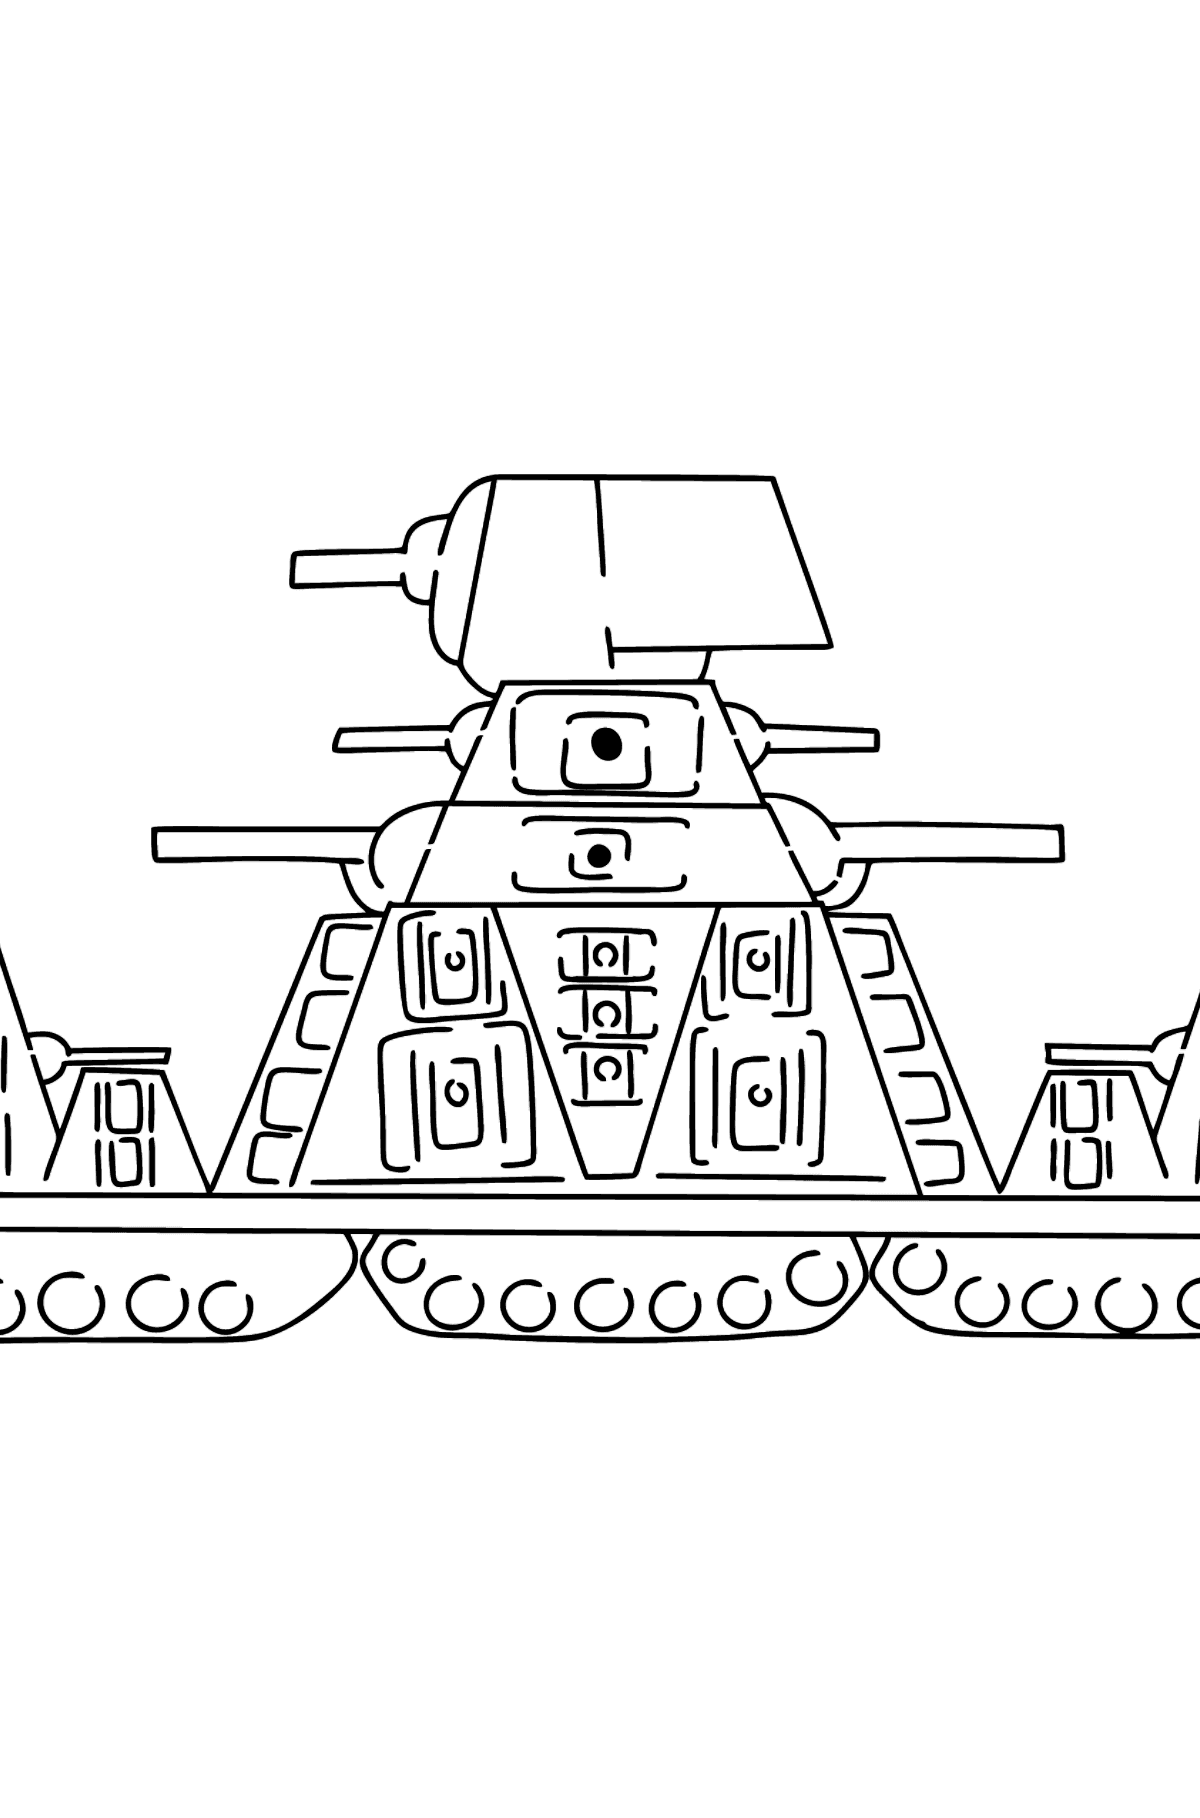 Tegning til fargelegging tank KV-44 - Tegninger til fargelegging for barn